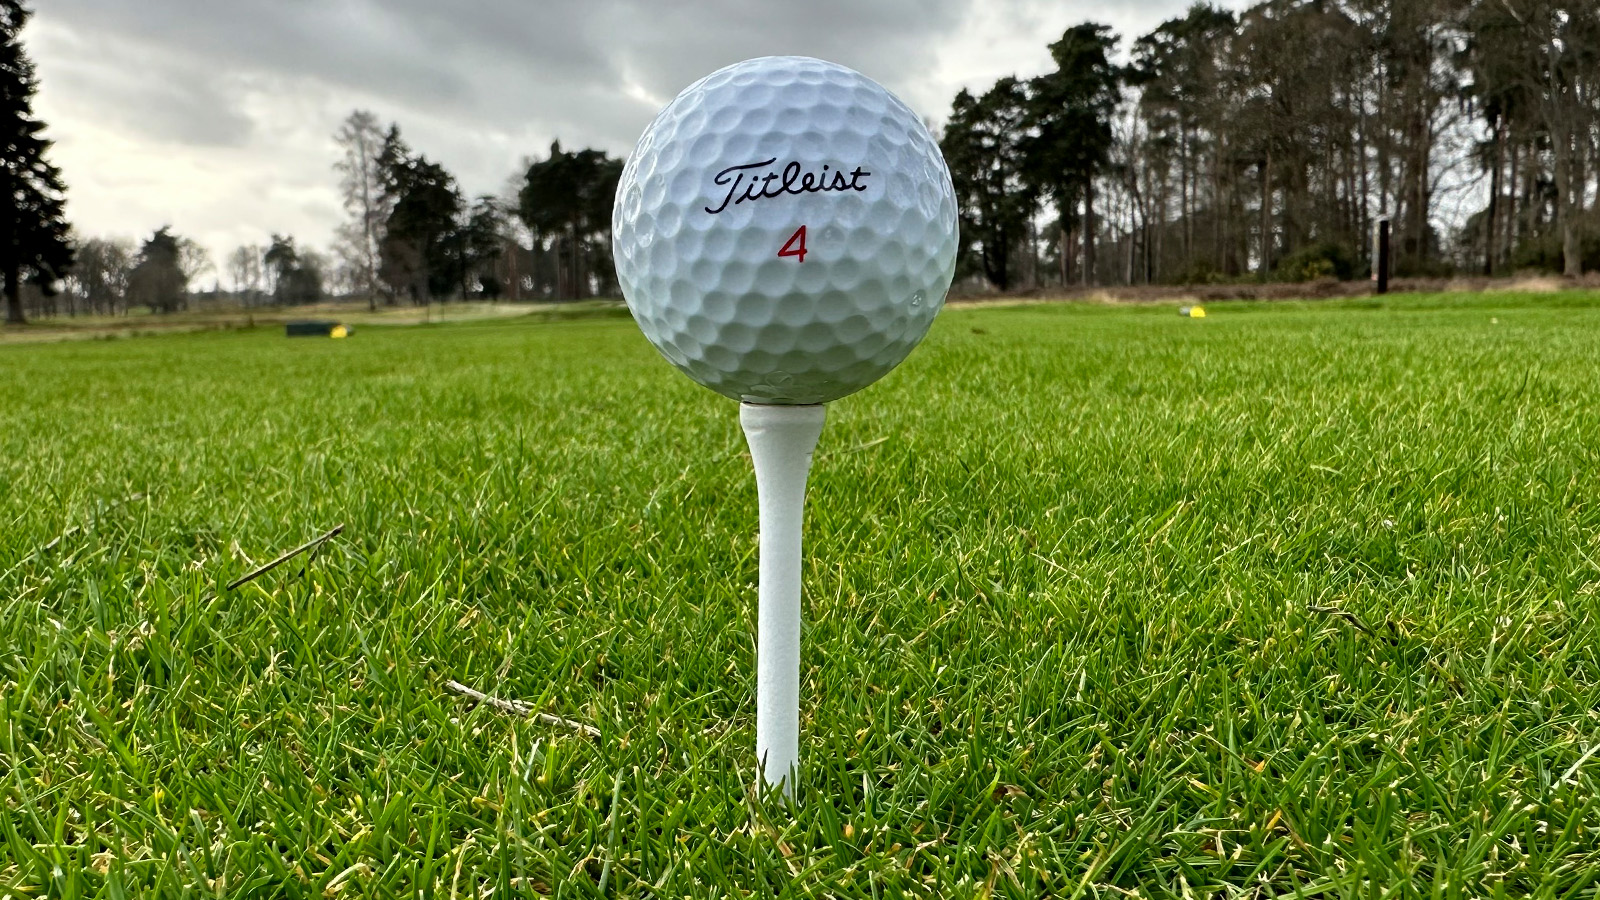 Titleist 2024 TruFeel Golf Ball Review